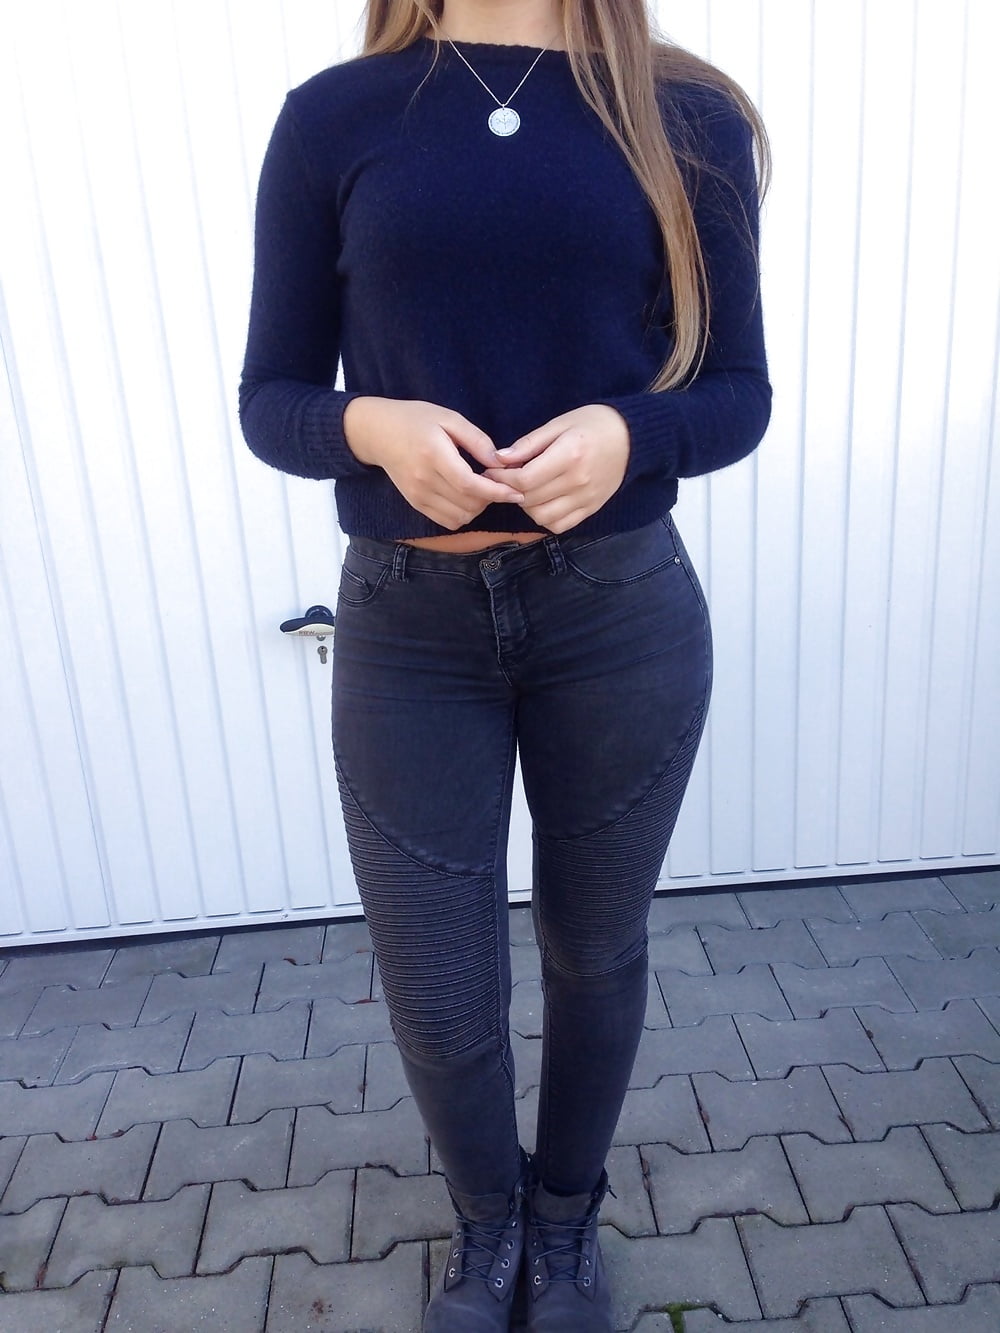 german_girl_in_hot_leggings_annamaria (3/15)